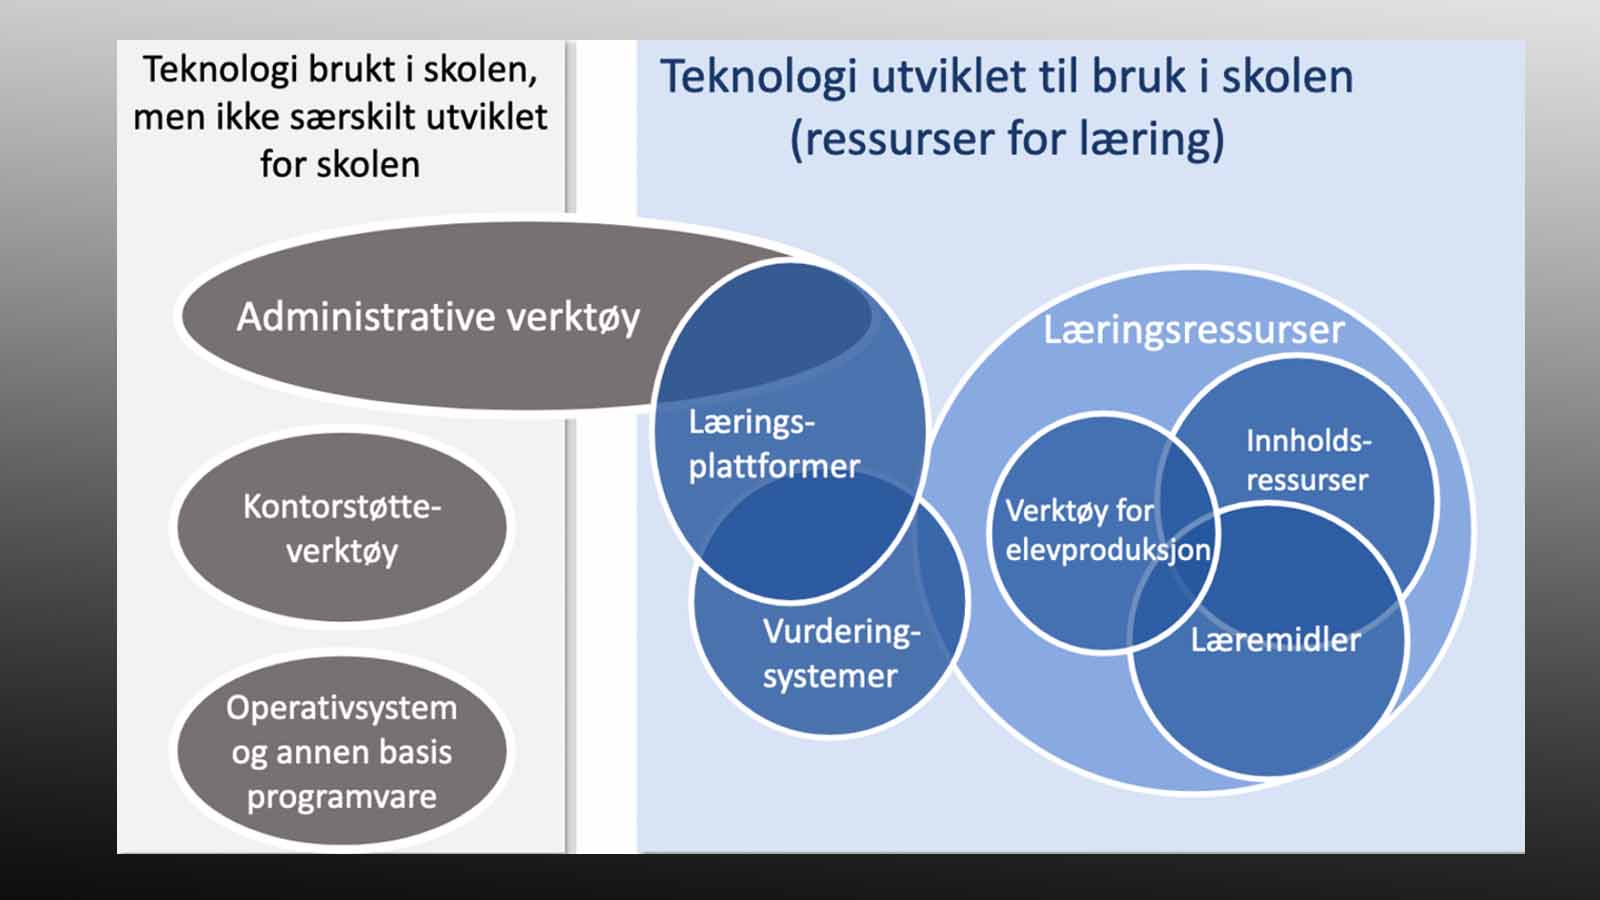 Faksimile av regjeringens grafikk om tekniske systemer i skolen